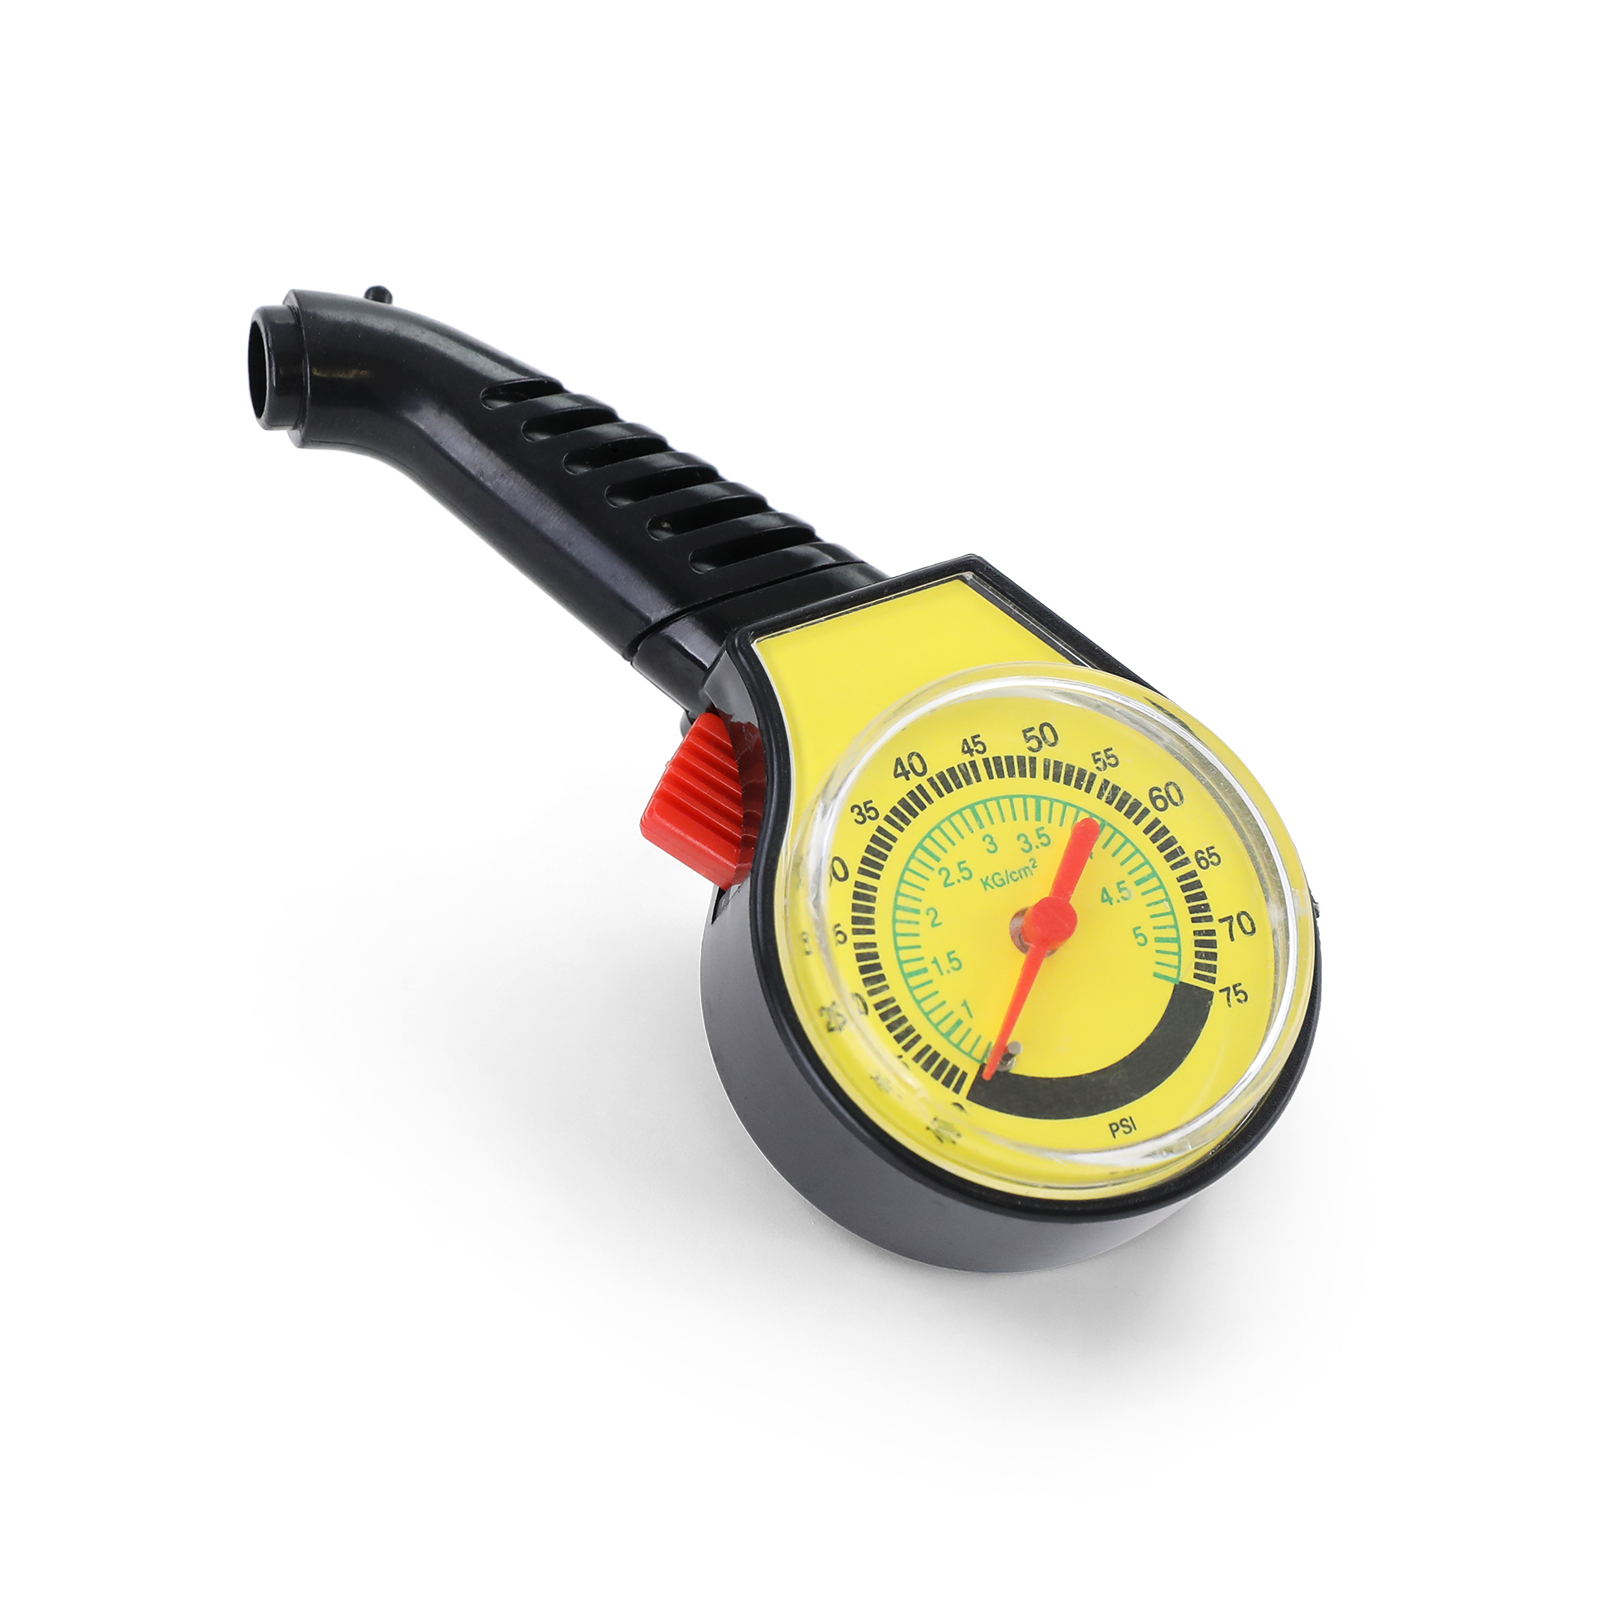 CCJX1 Reifendruckmesser Analog Auto Rad Reifen Luftdruckprüfer Meter Griff Spiegel Förmigen Fahrzeug Motorrad Auto Reifen Tester Reifen Air Monitor System 